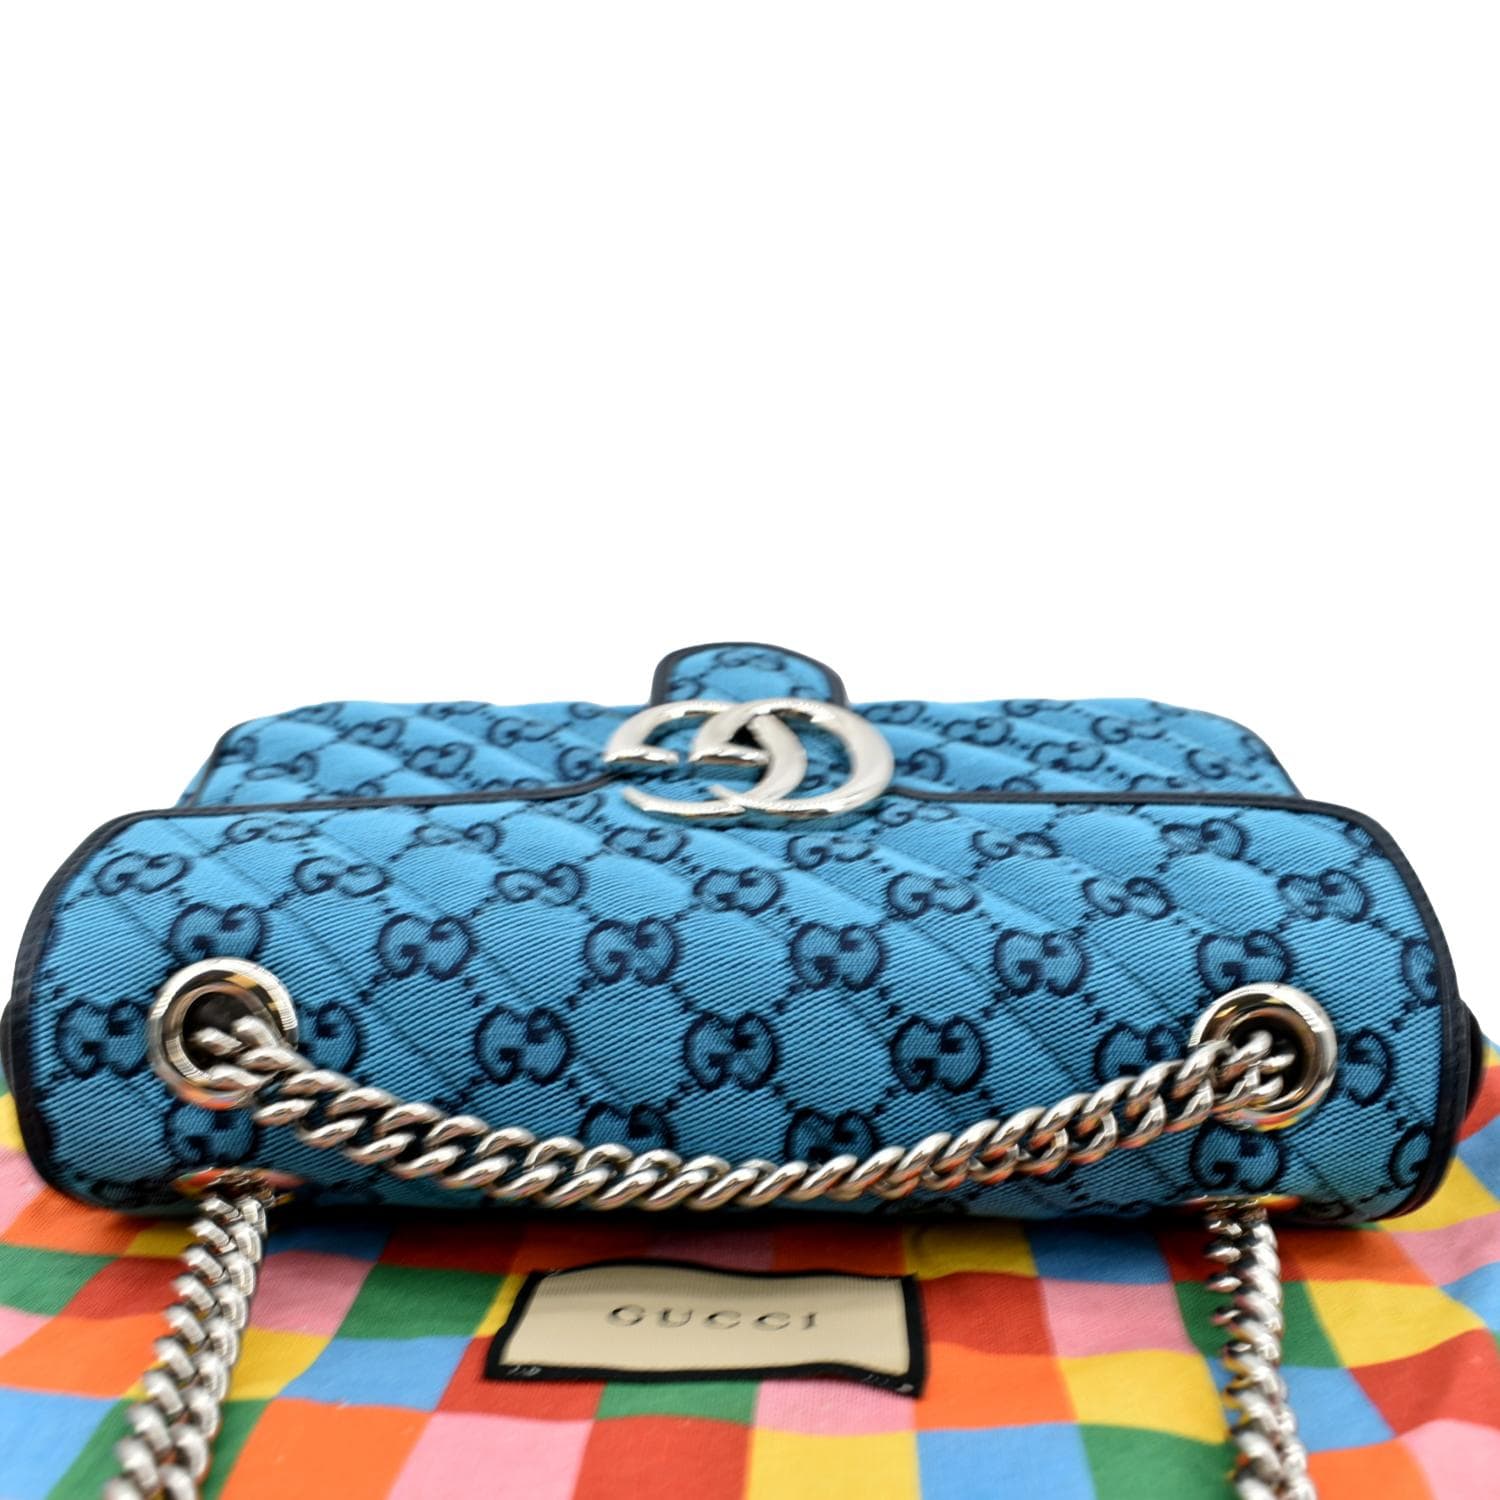 GUCCI: Petit sac en cuir Marmont - Bleu Azur  Sac Porté Épaule Gucci  443497 DTDIY en ligne sur